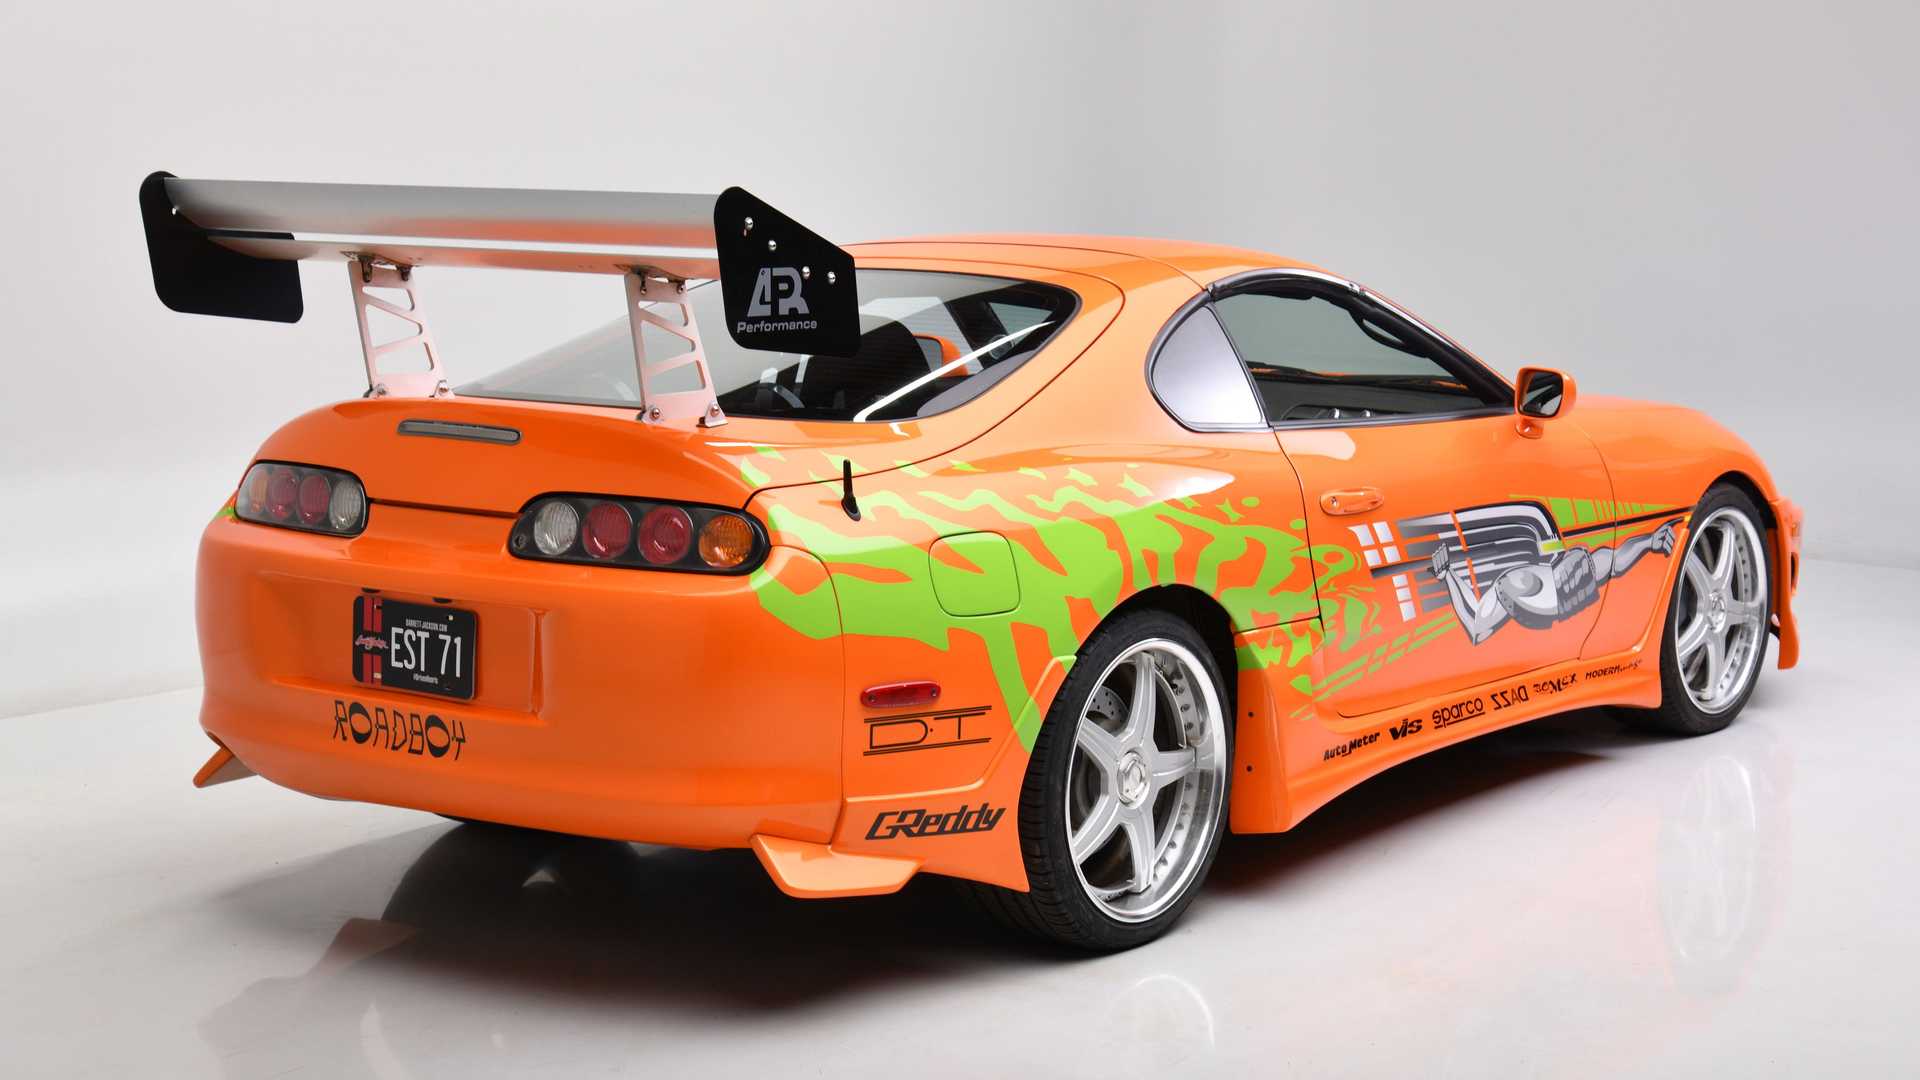 نمای سه چهارم عقب تویوتا سوپرا فیلم سریع و خشن / Fast & Furious Toyota Supra نارنجی رنگ